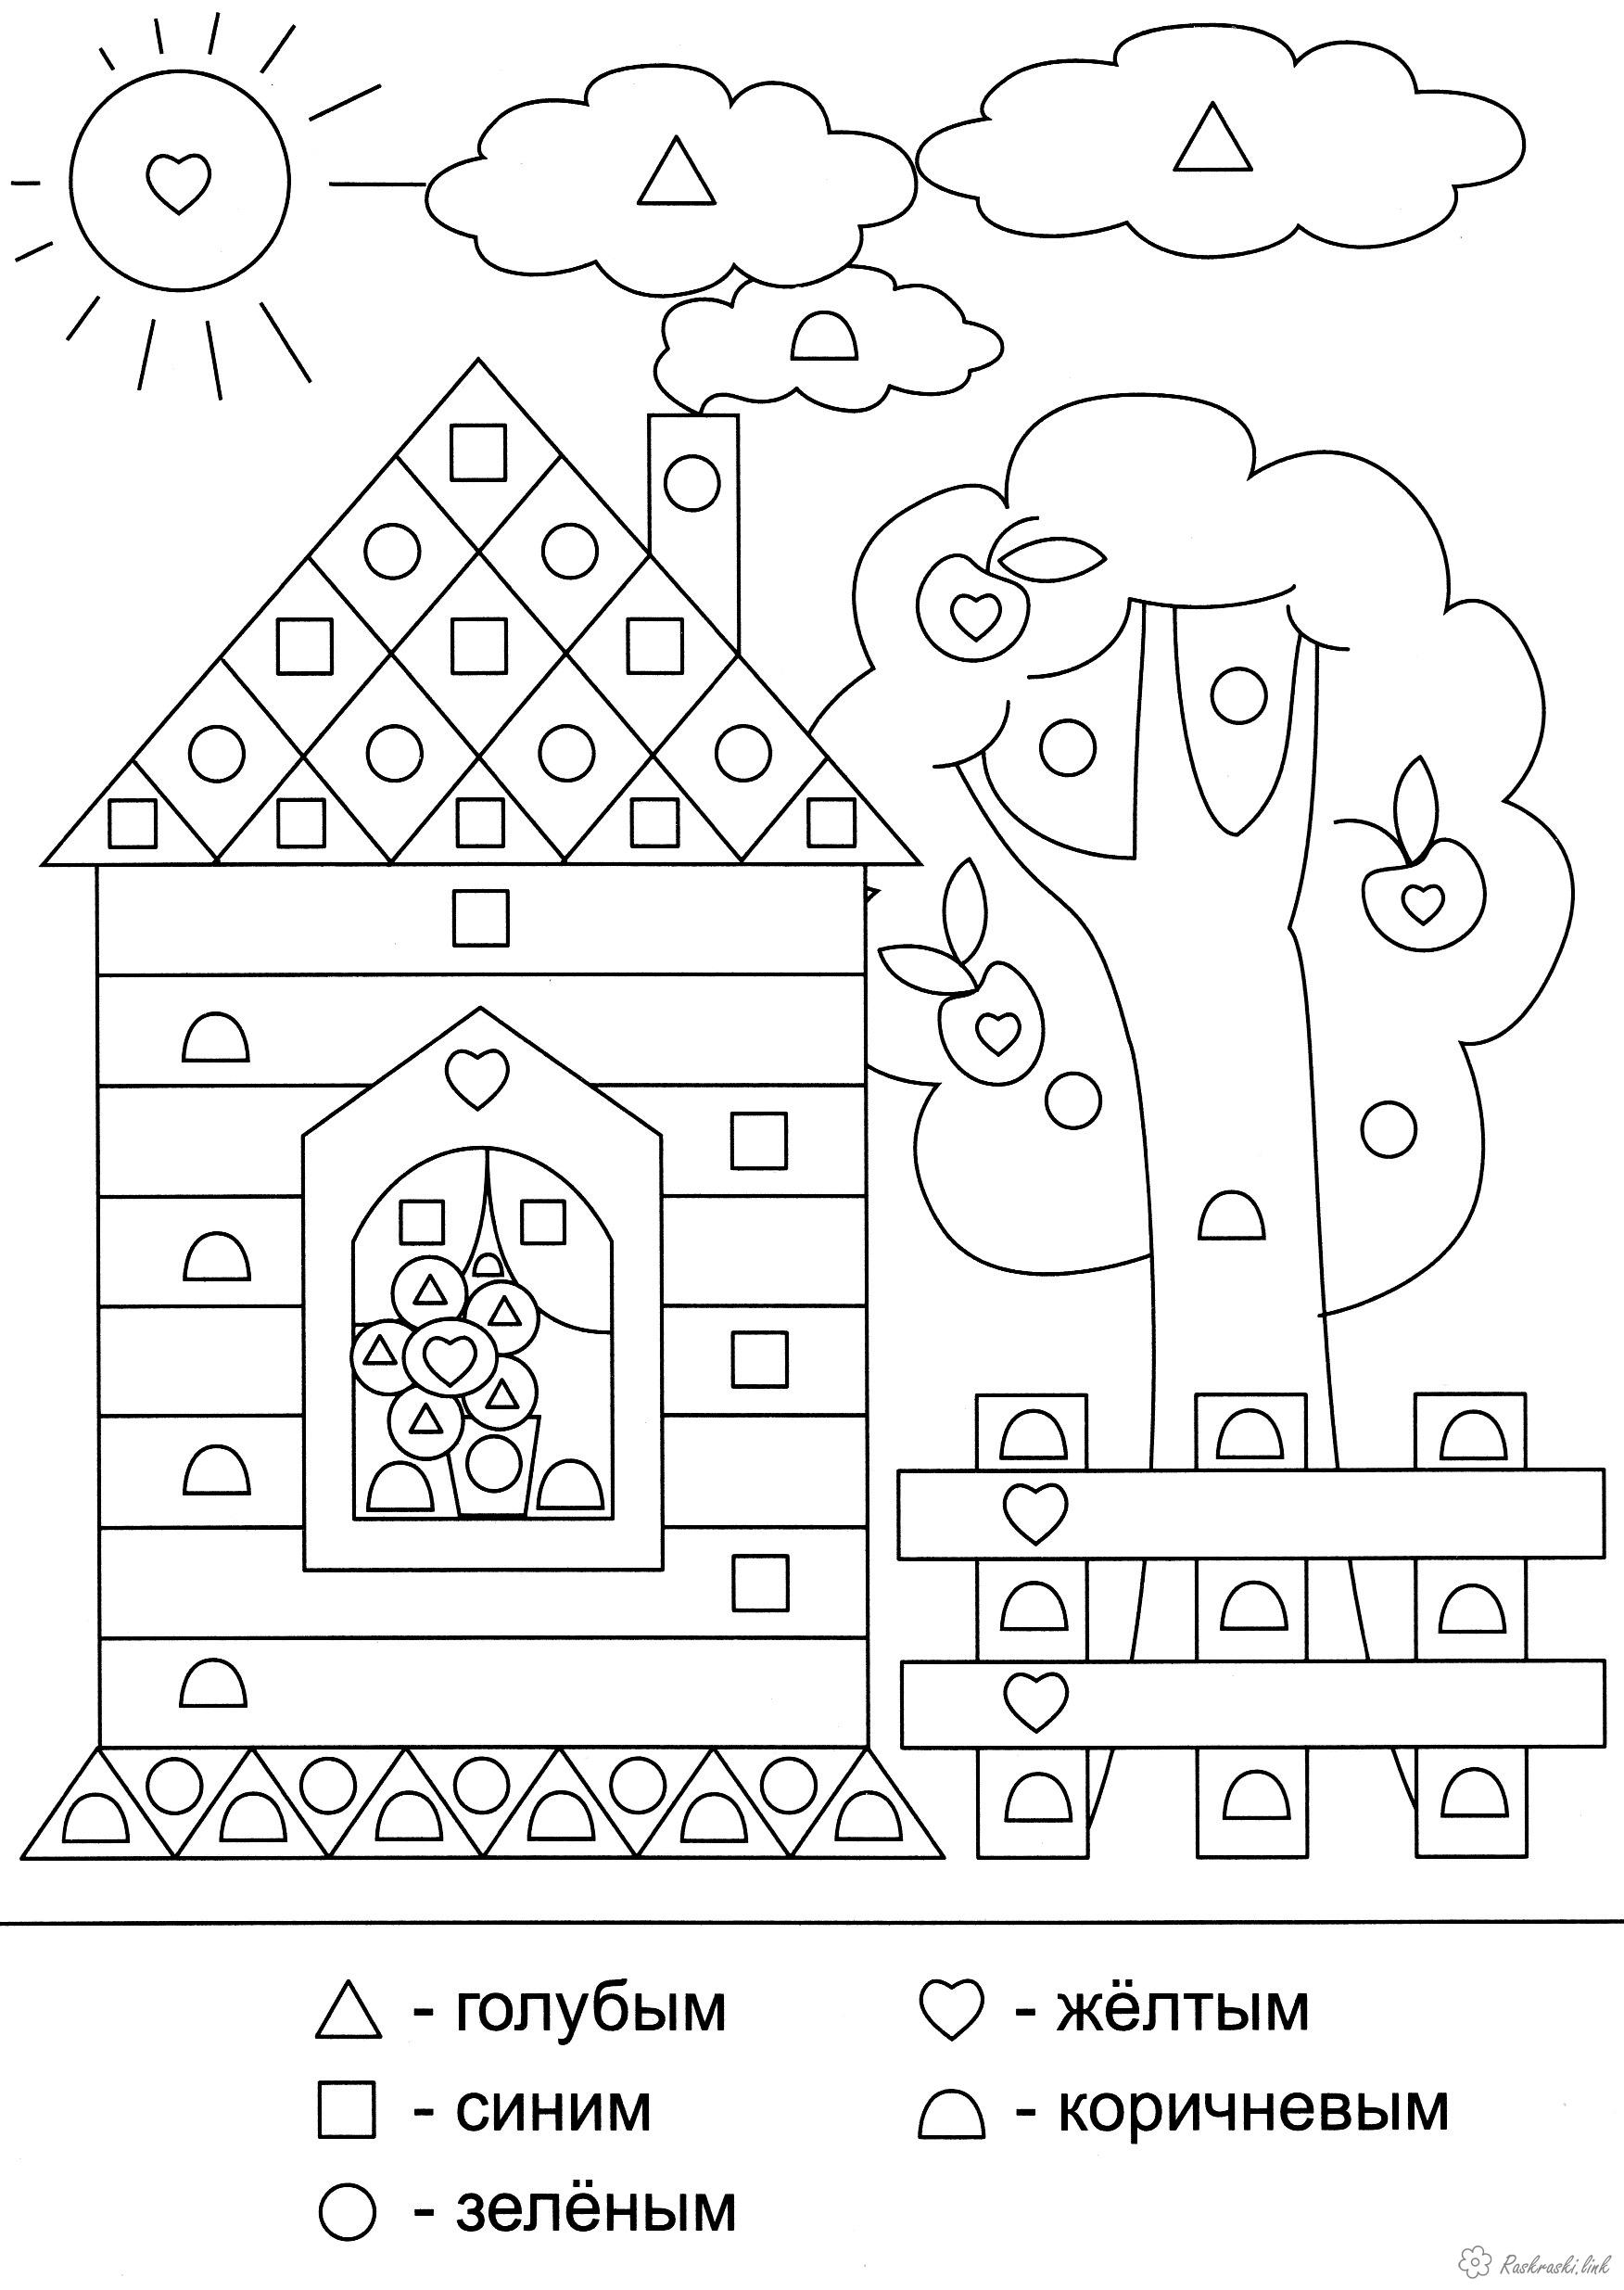 Розмальовки квадрат сонце будинок паркан дерево облок трикутник квадрат коло